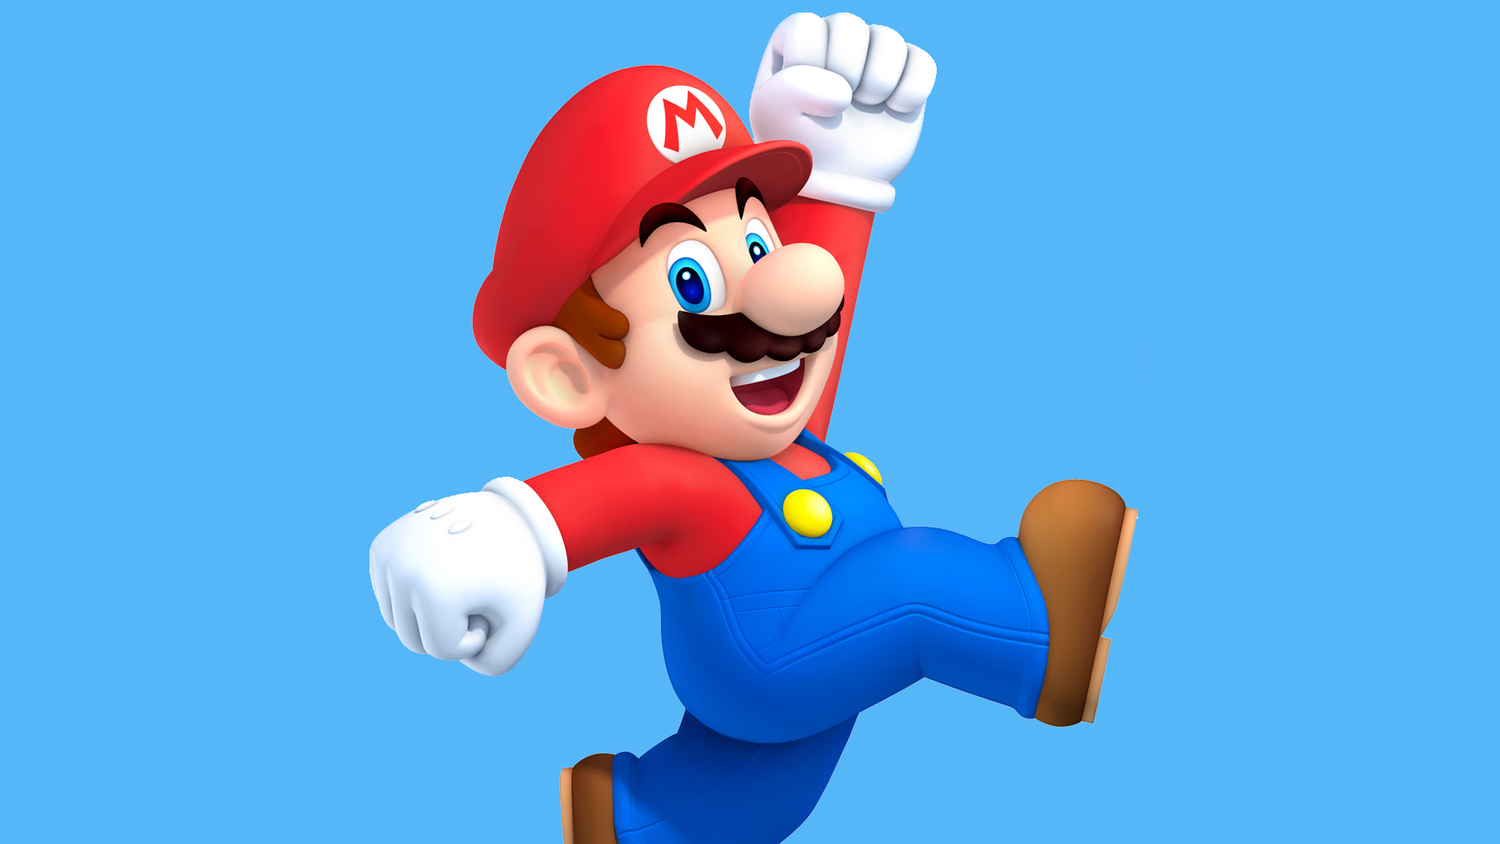 Mario new life. Марио Нинтендо. Марио бег. 53 Марио. Марио прыгает.